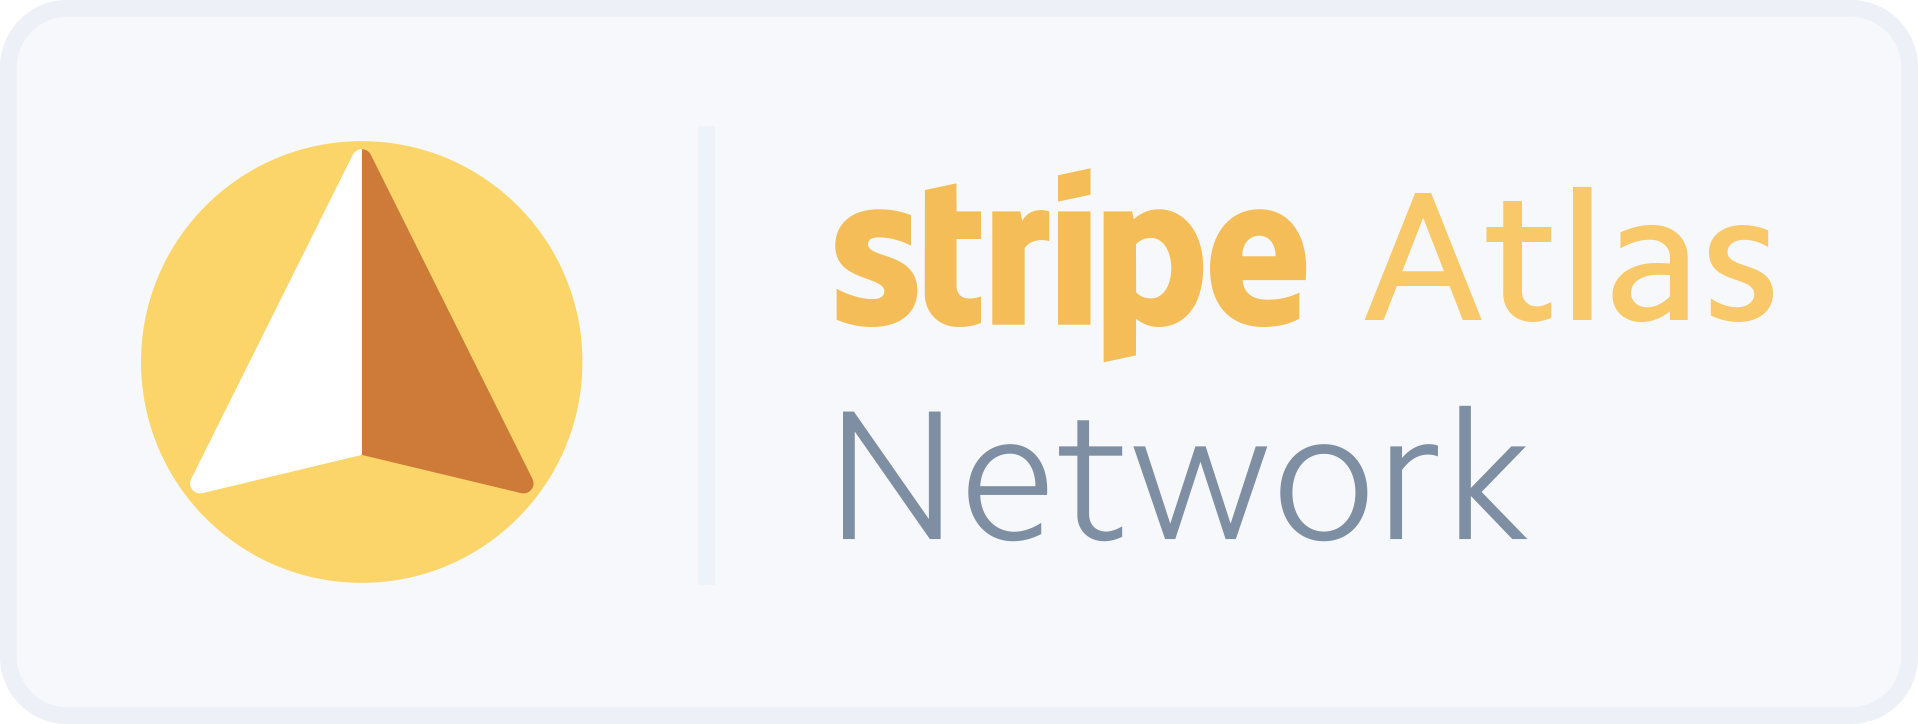 Stripe Atlas Network